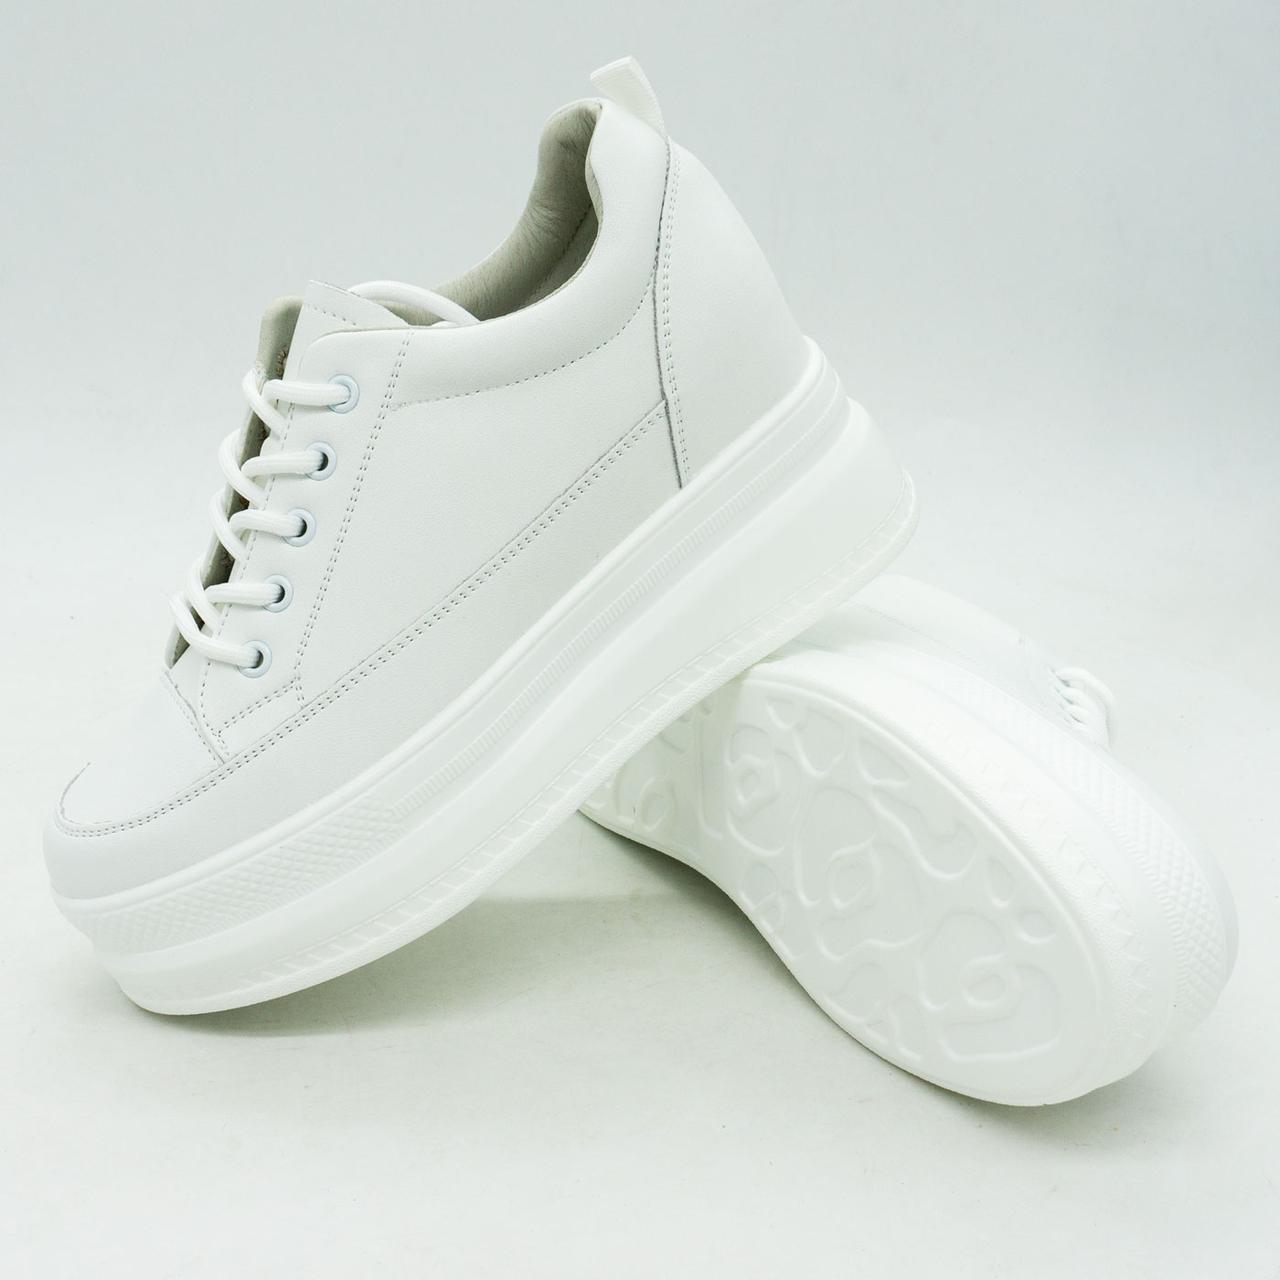 Жіночі шкiрянi кросівки на танкетці Fashion 268 білі 37. Розміри в наявності: 37, 38, 39.